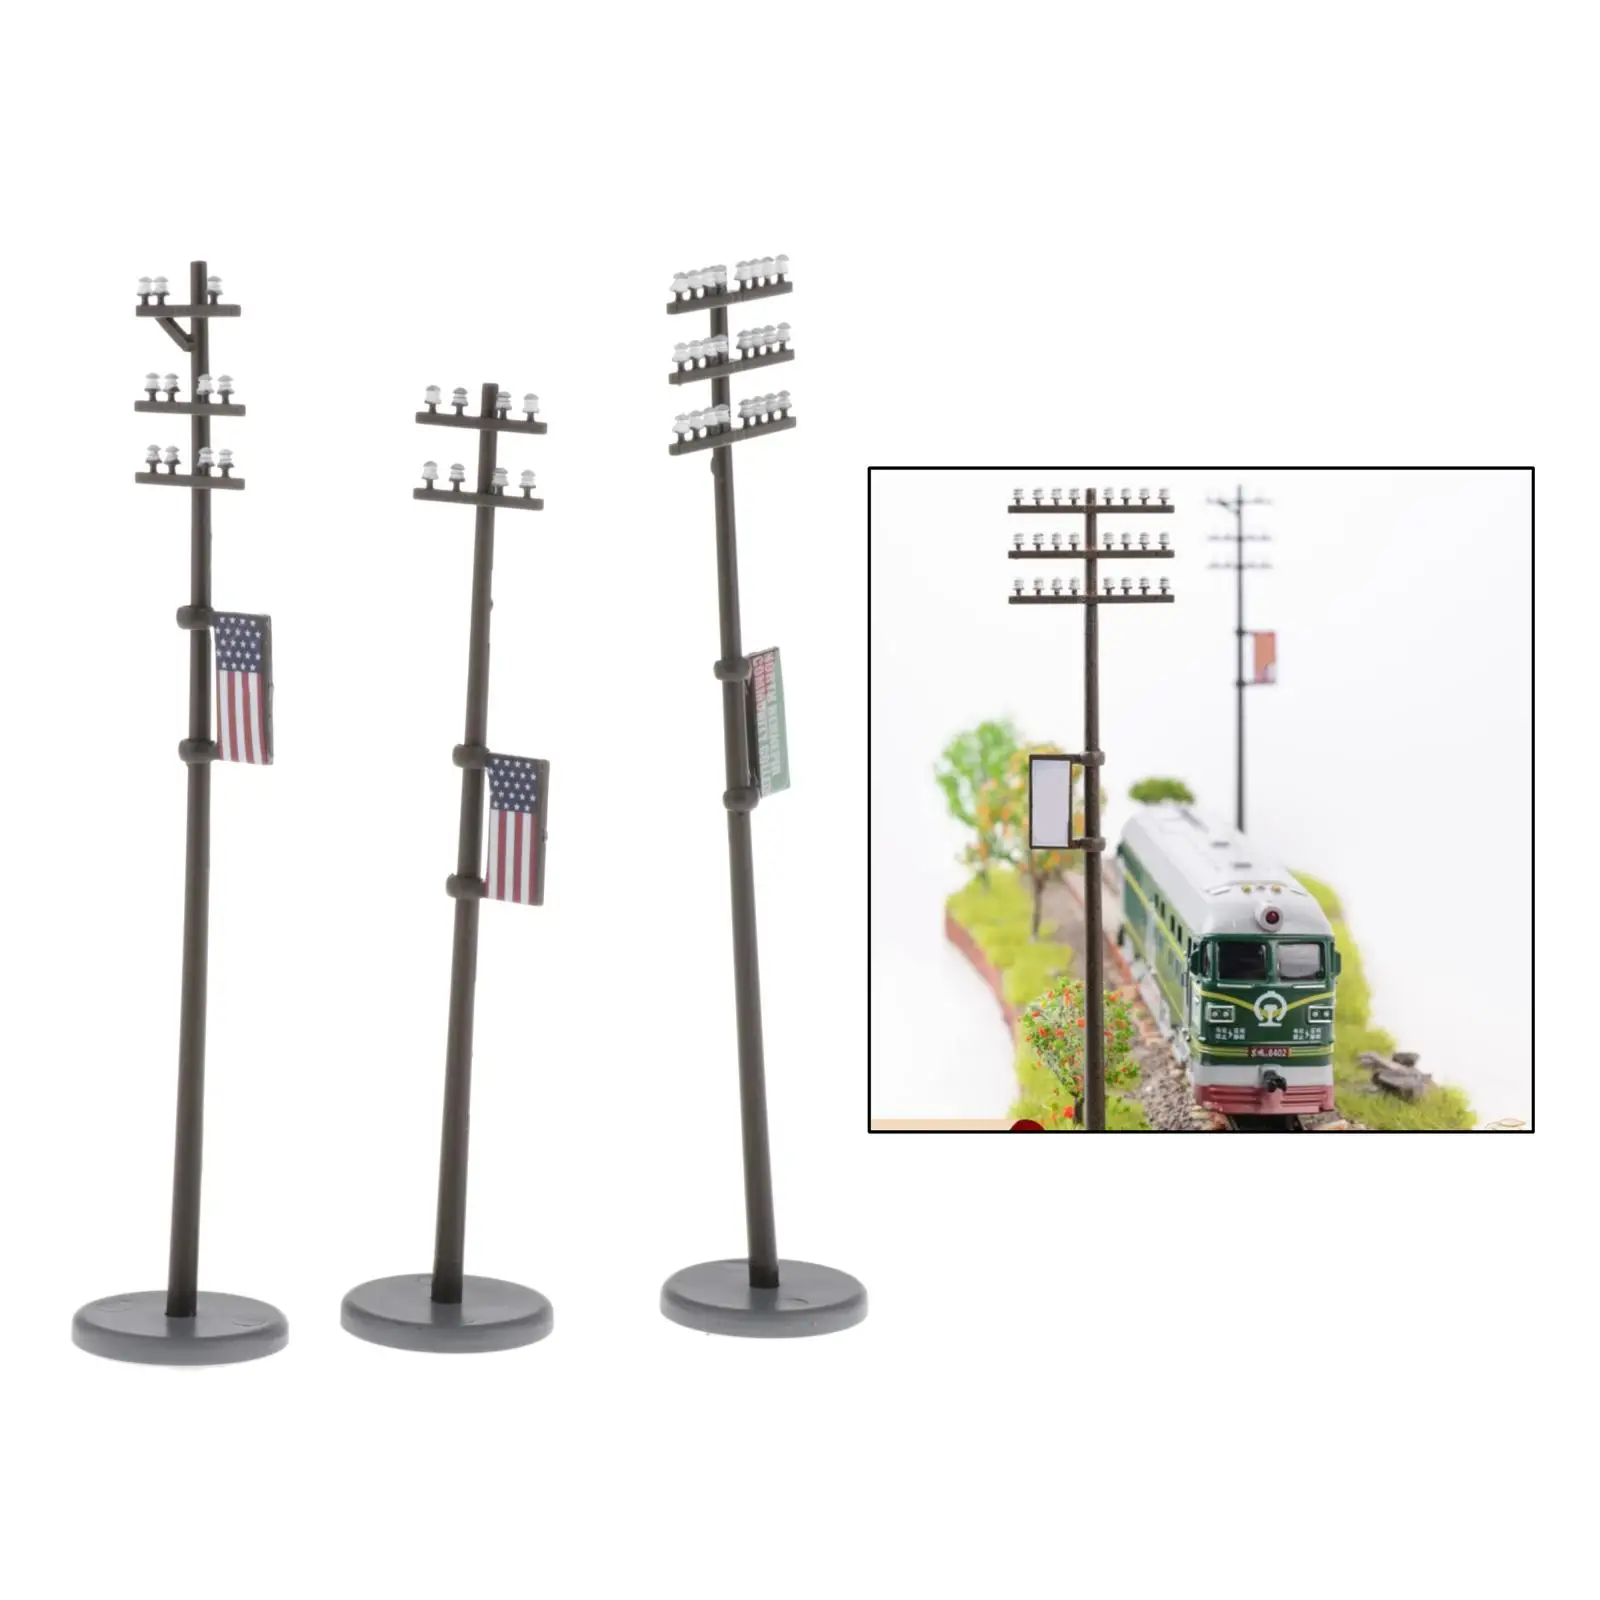 3 Pieces 1/42 Electricity Masts Telephone Mast Set LANDSCAPE Building